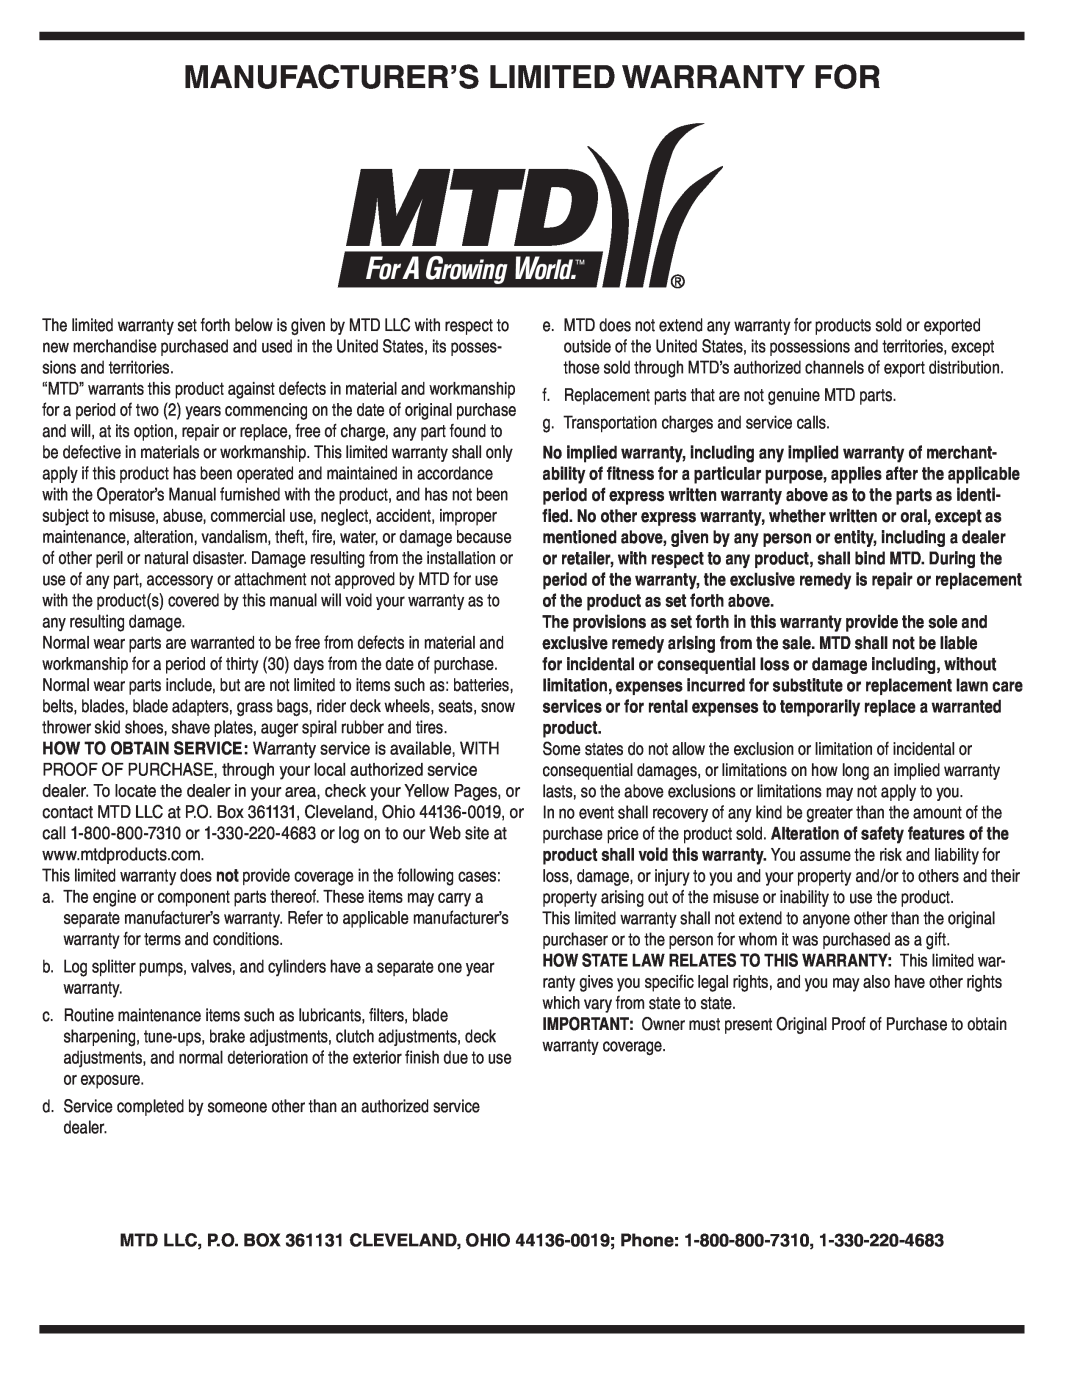 MTD 462 thru 464 warranty Manufacturer’S Limited Warranty For 